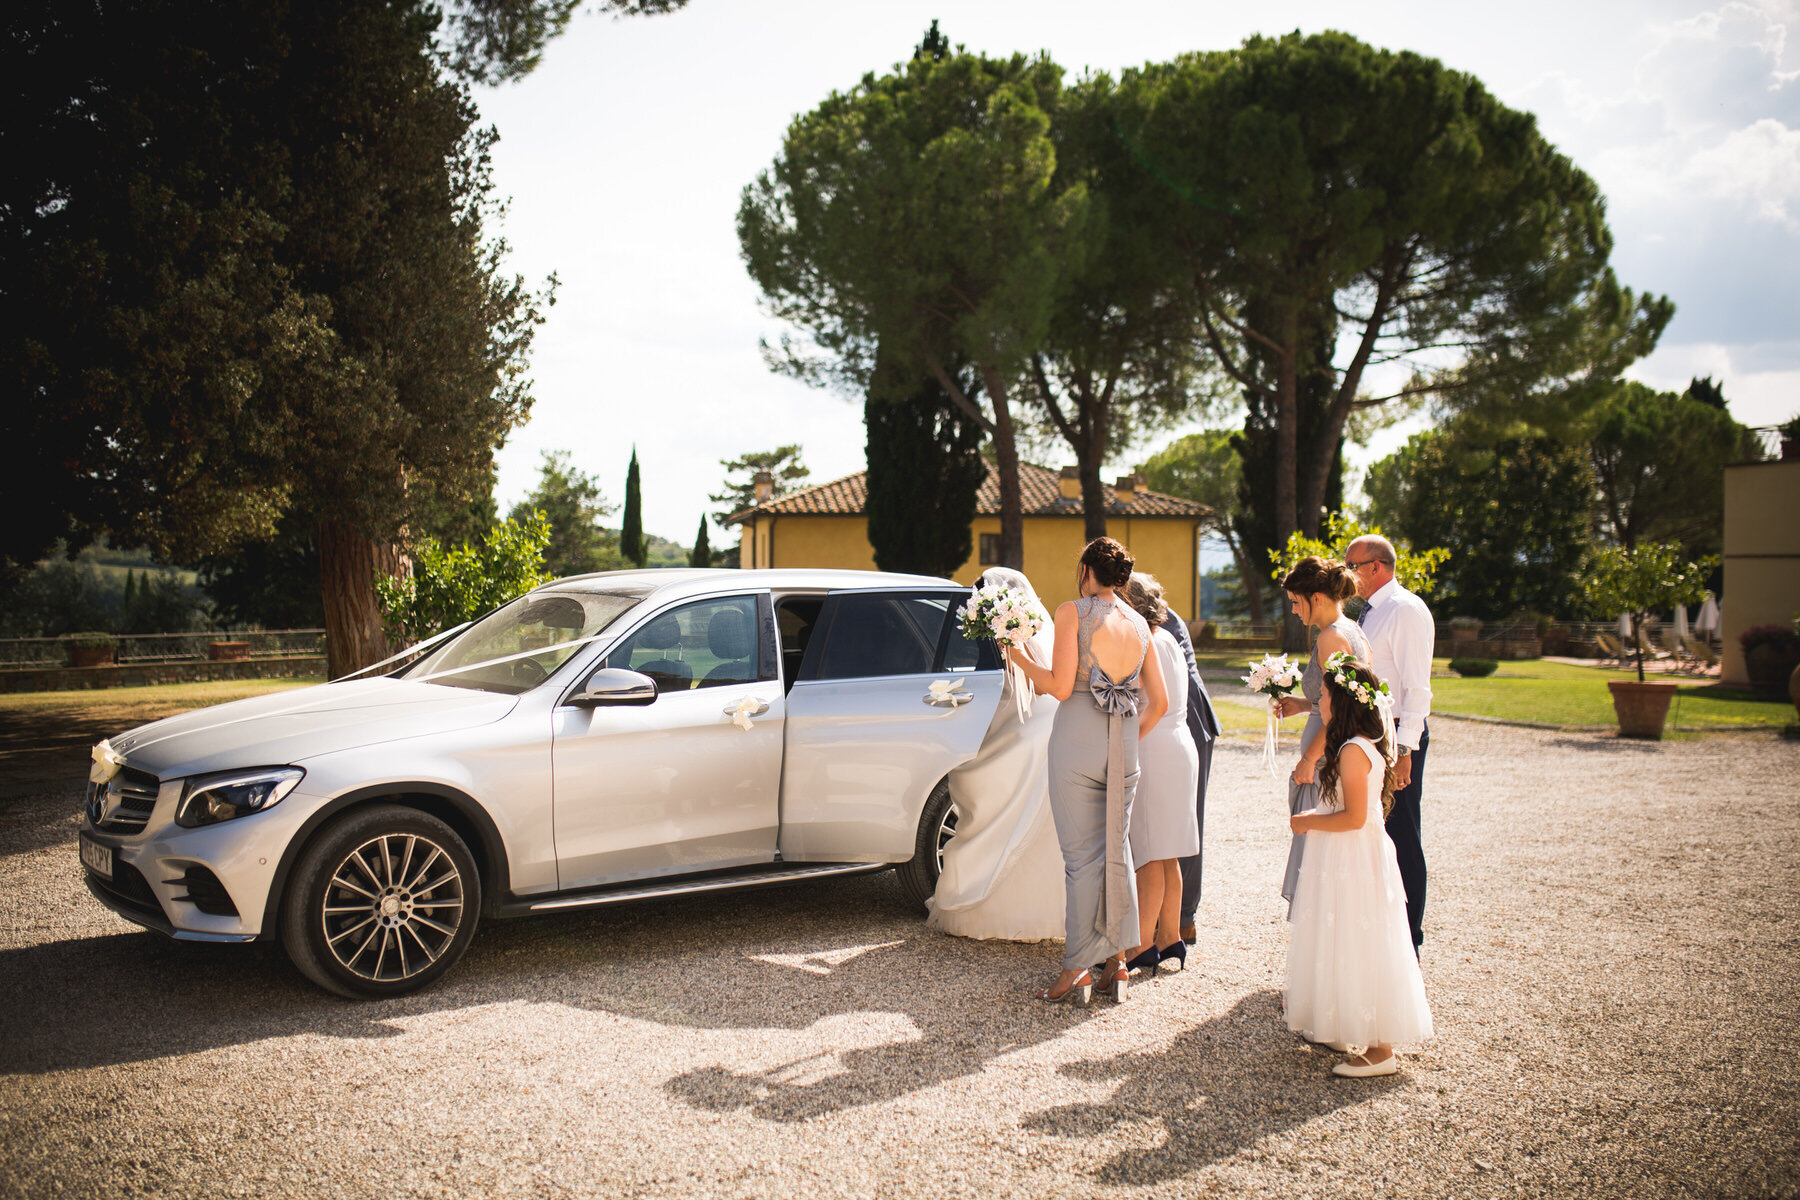 weddings-in-tuscany-36.jpg